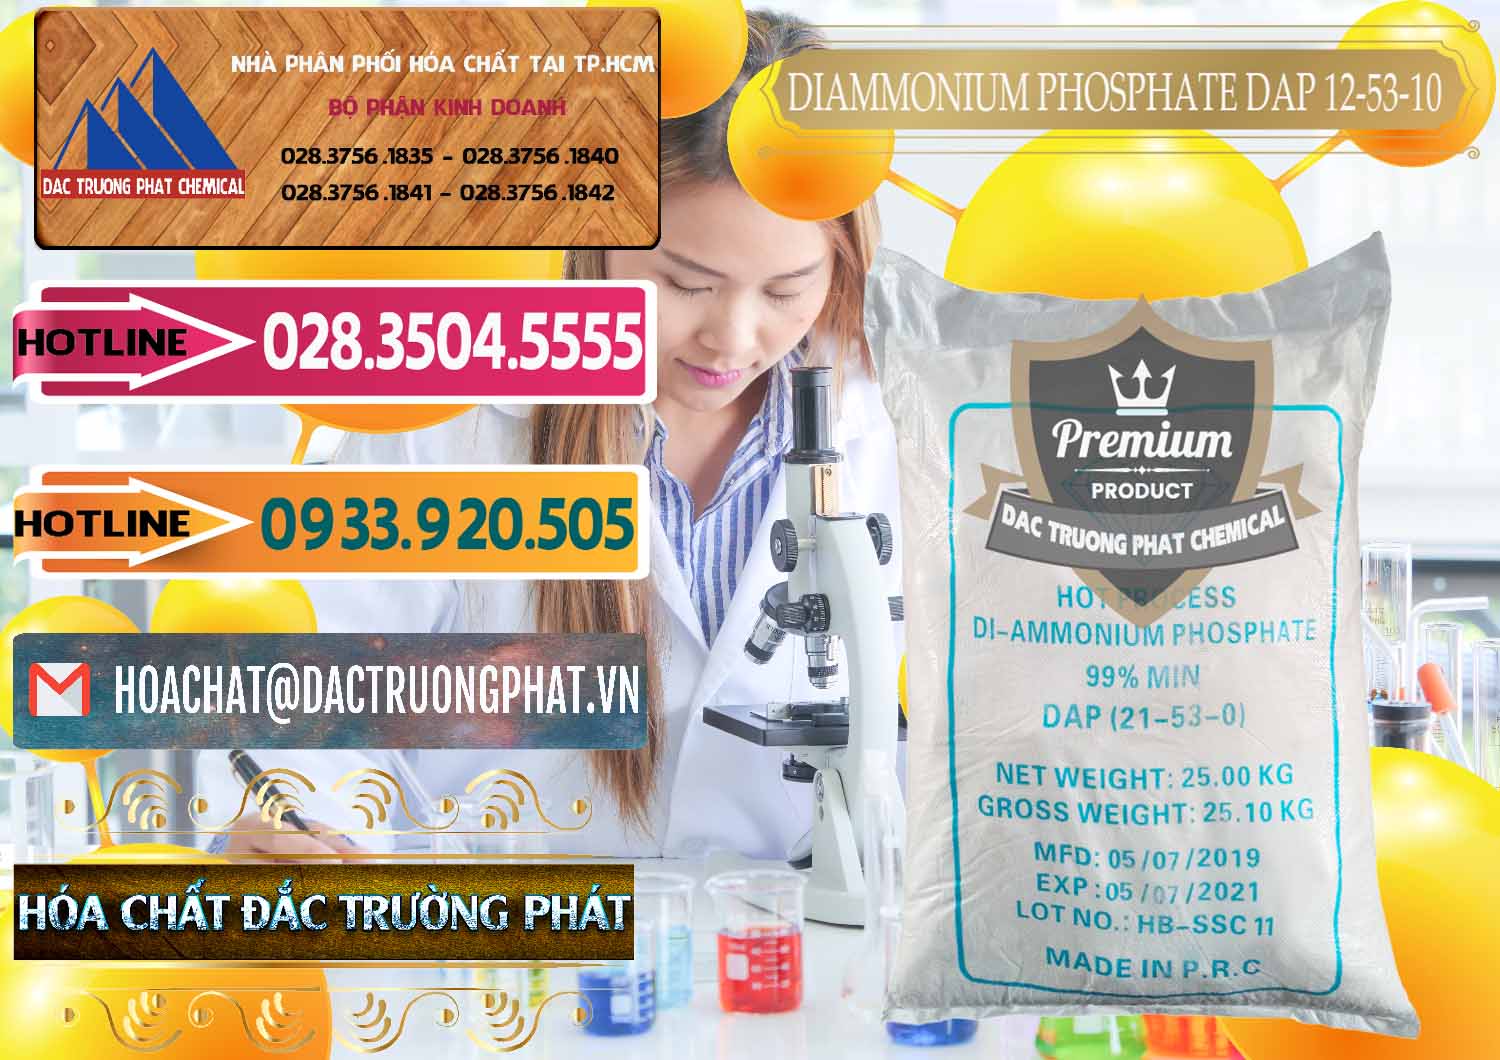 Nơi chuyên bán _ cung cấp DAP - Diammonium Phosphate Trung Quốc China - 0319 - Đơn vị bán và phân phối hóa chất tại TP.HCM - dactruongphat.vn